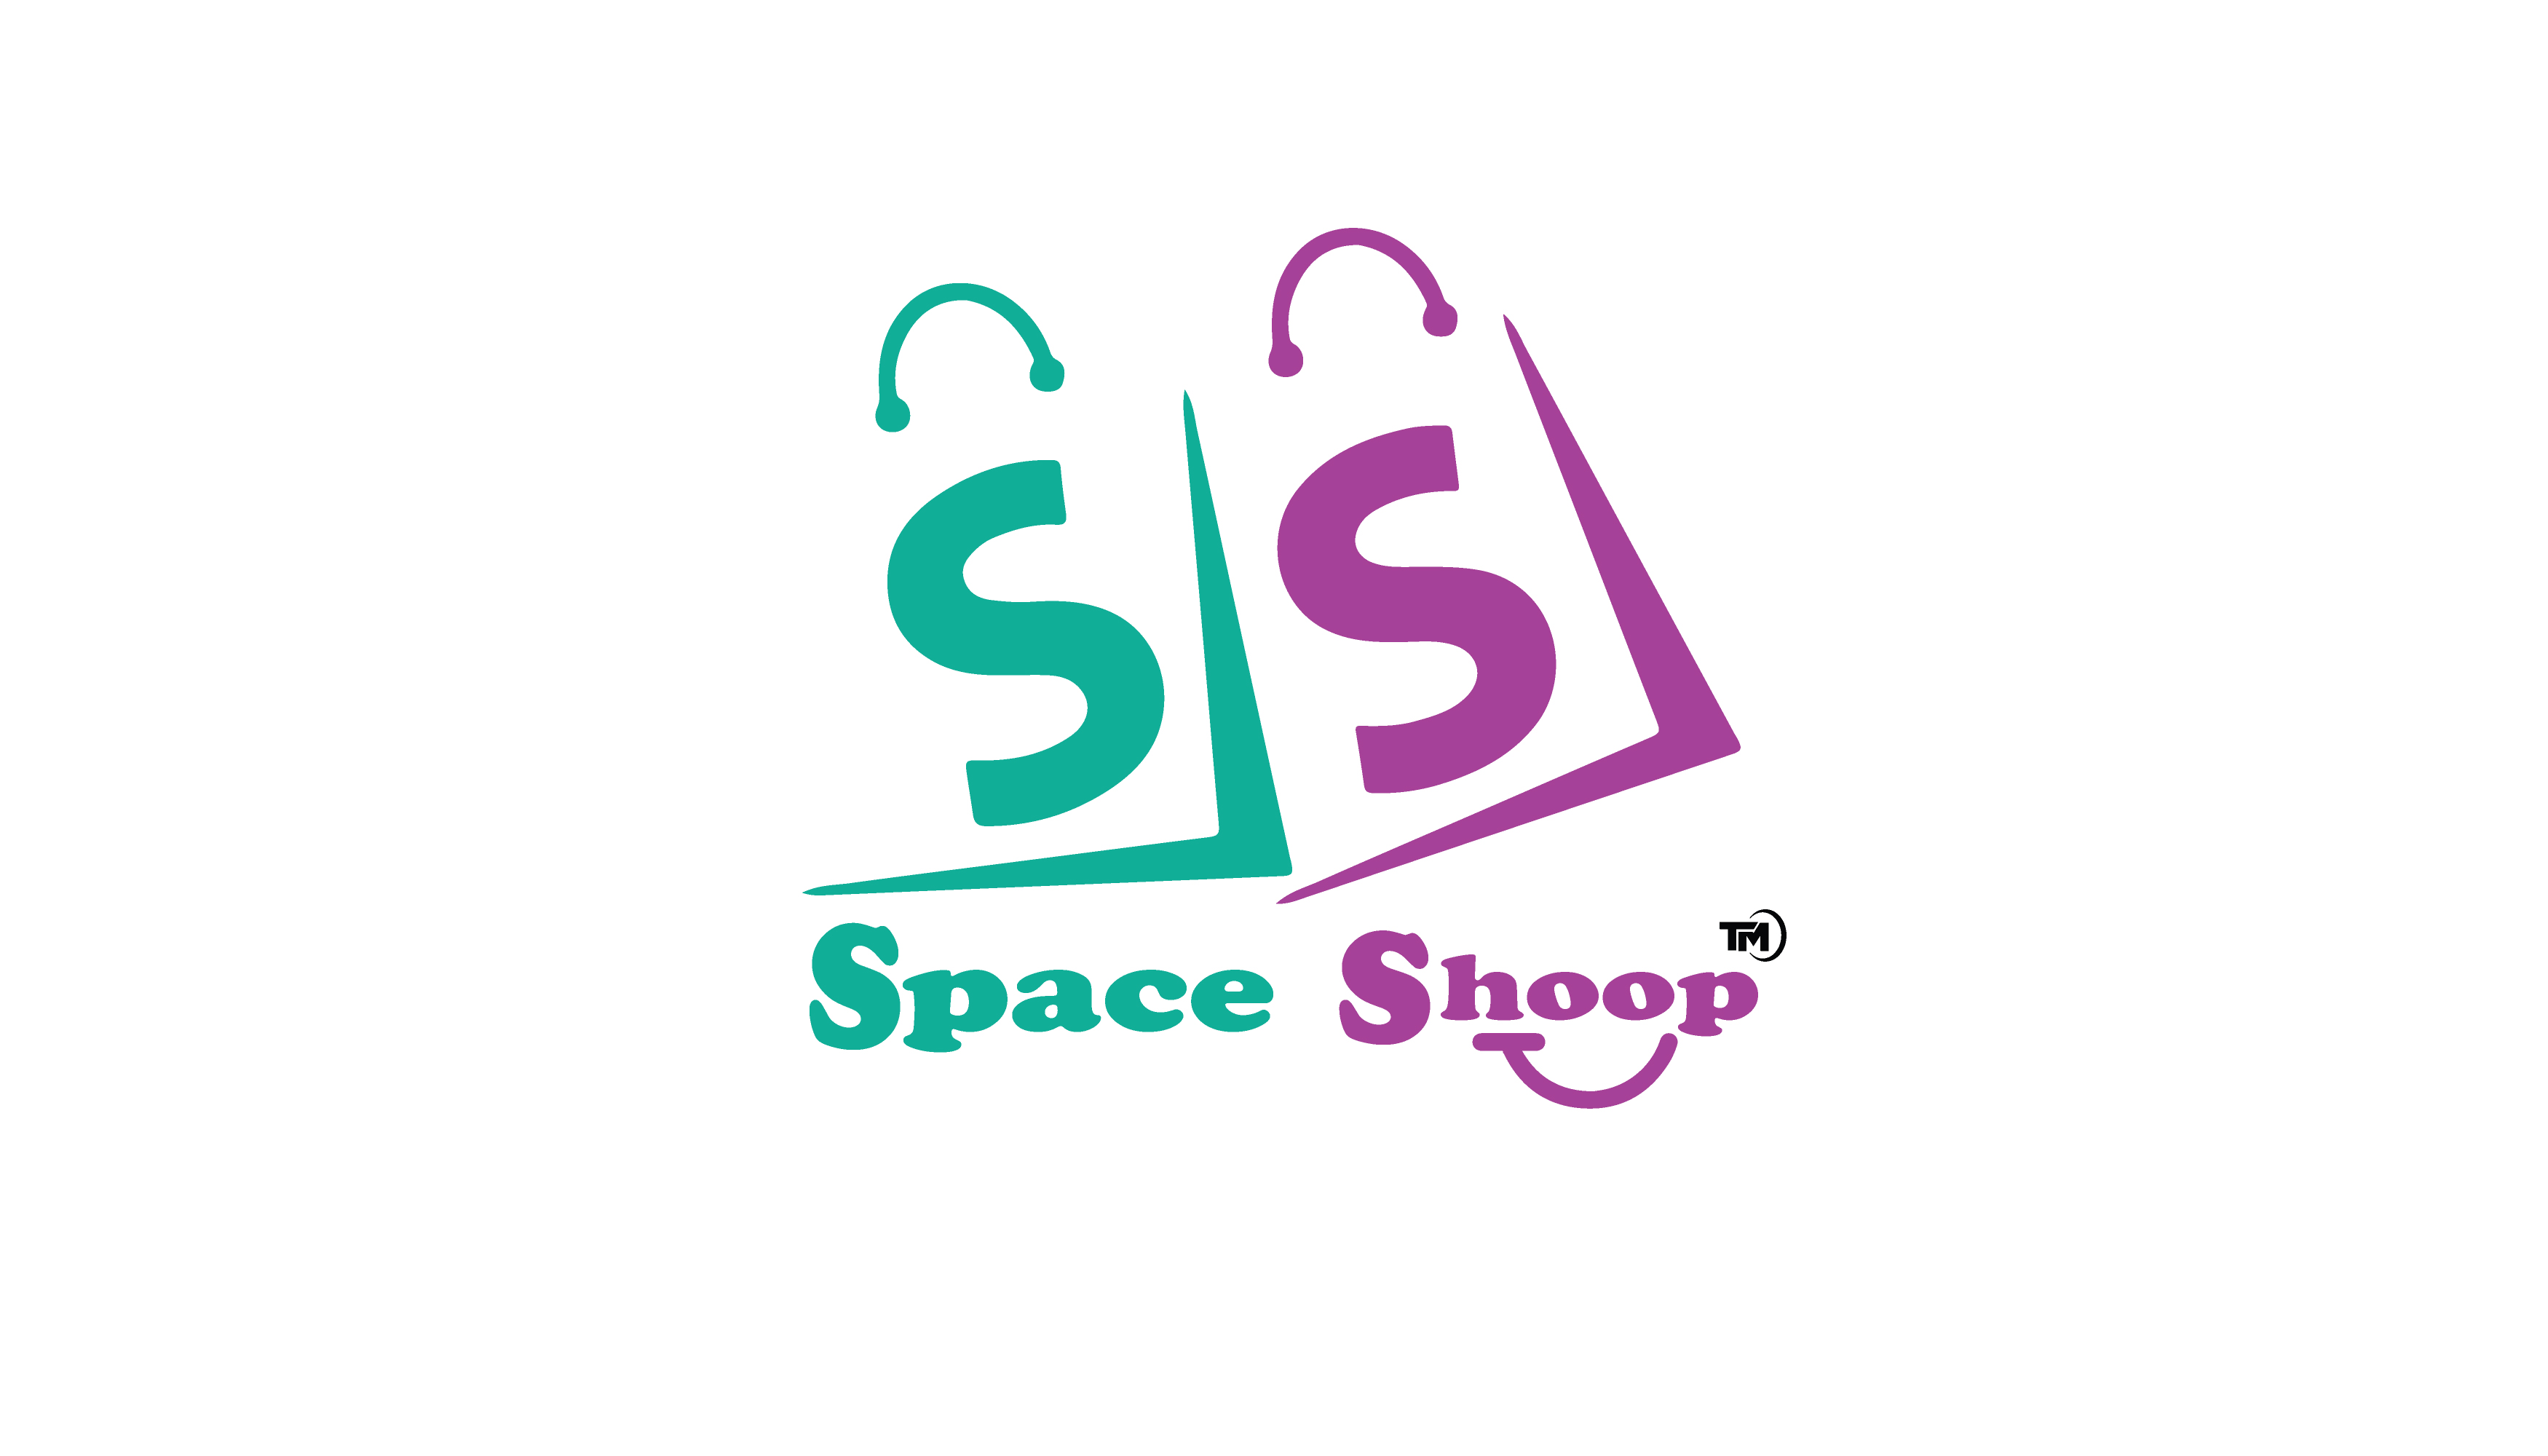 Spaceshoop